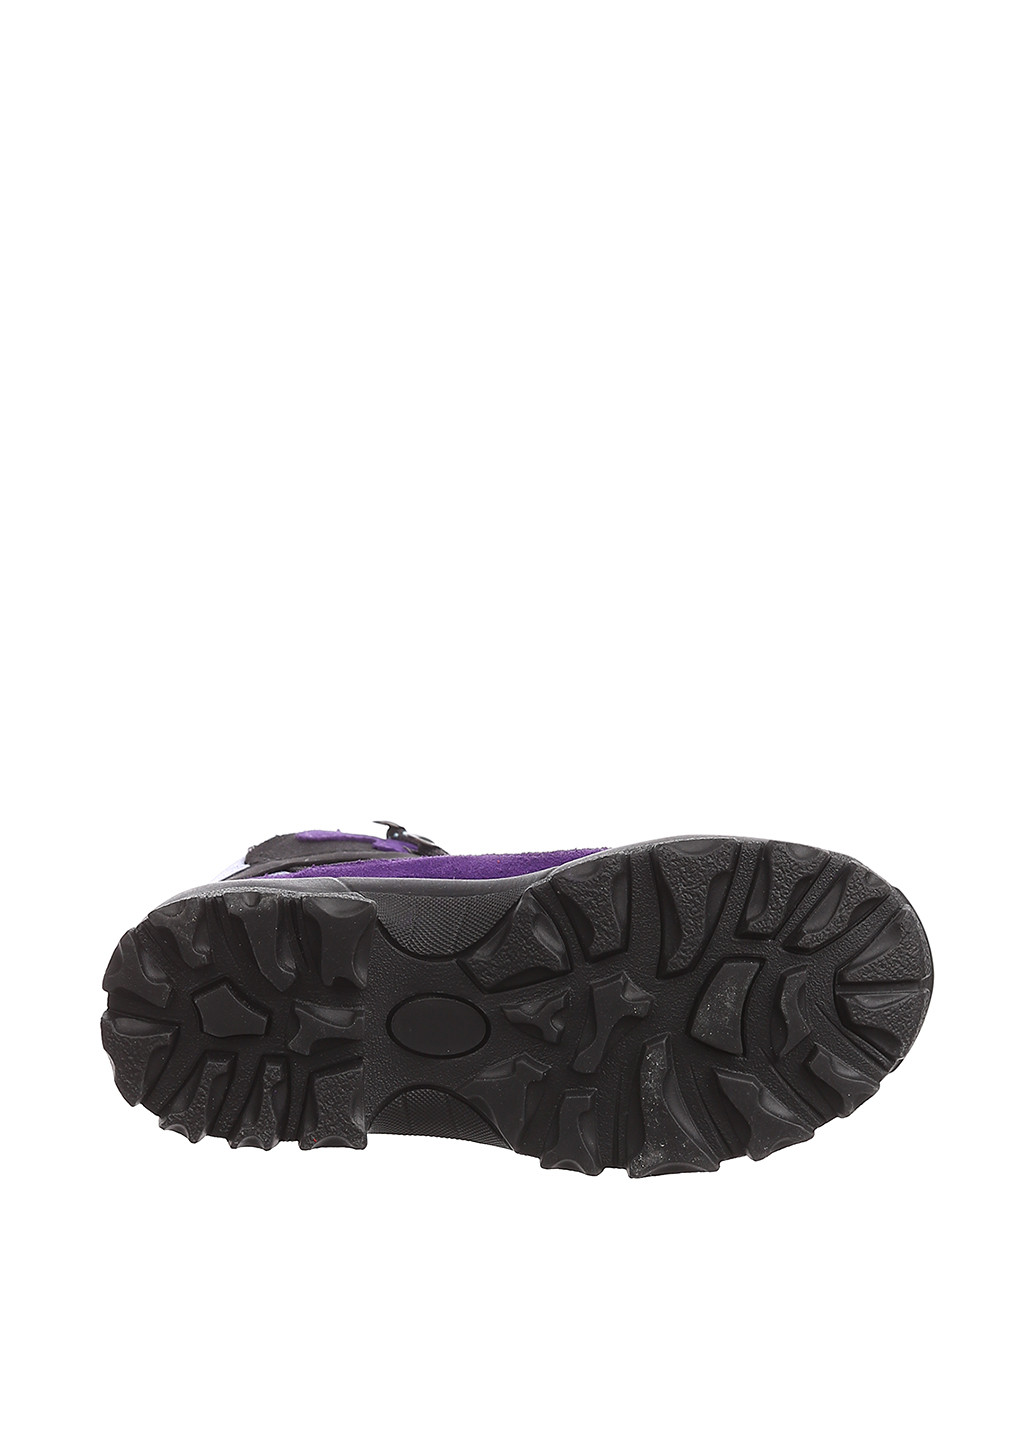 Темно-фиолетовые кэжуал осенние ботинки Grouse Creek